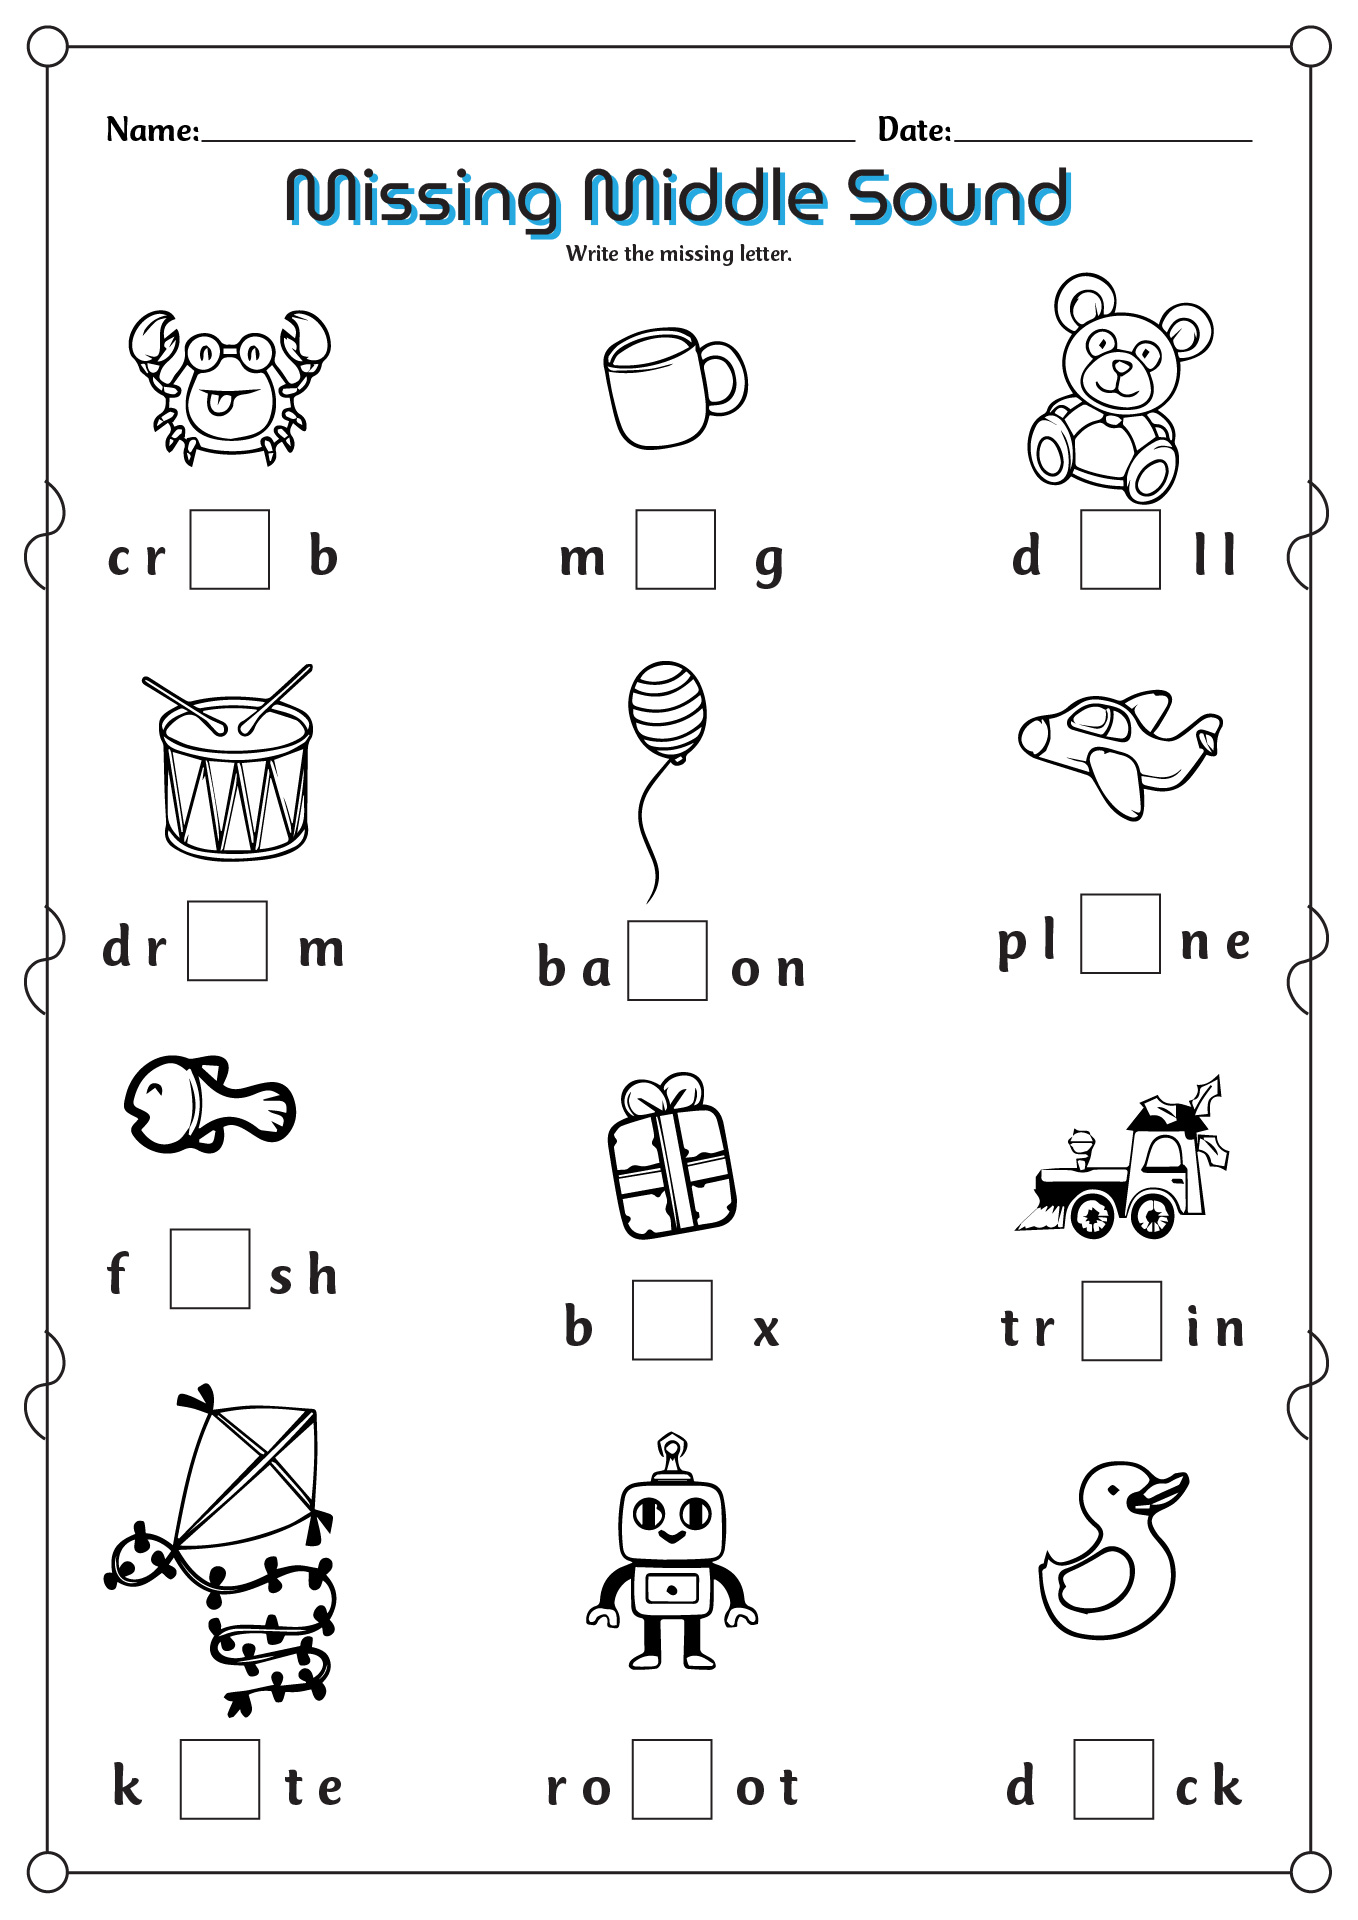 19 Best Images Of Missing Middle Worksheet Middle Vowel Sound Worksheets Kindergarten 